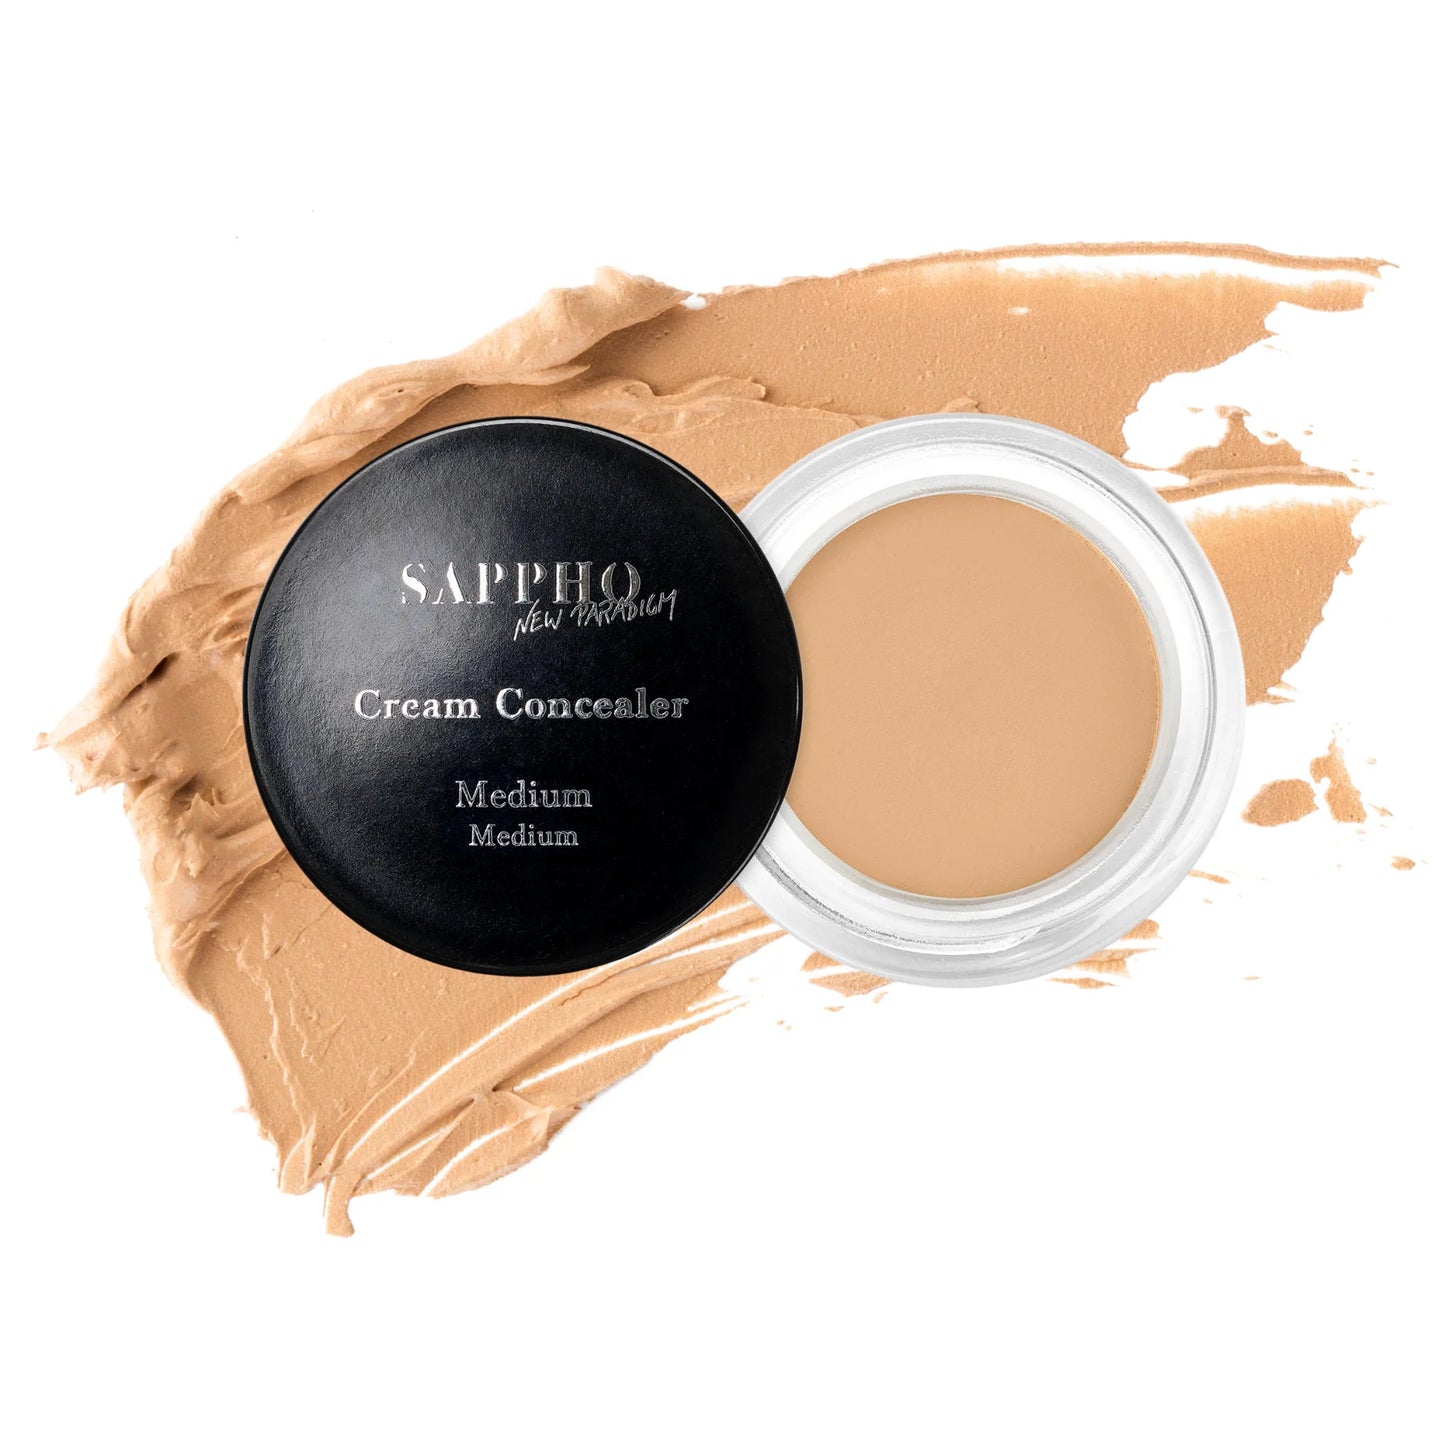 SAPPHO New Paradigm Cream Concealer Medium